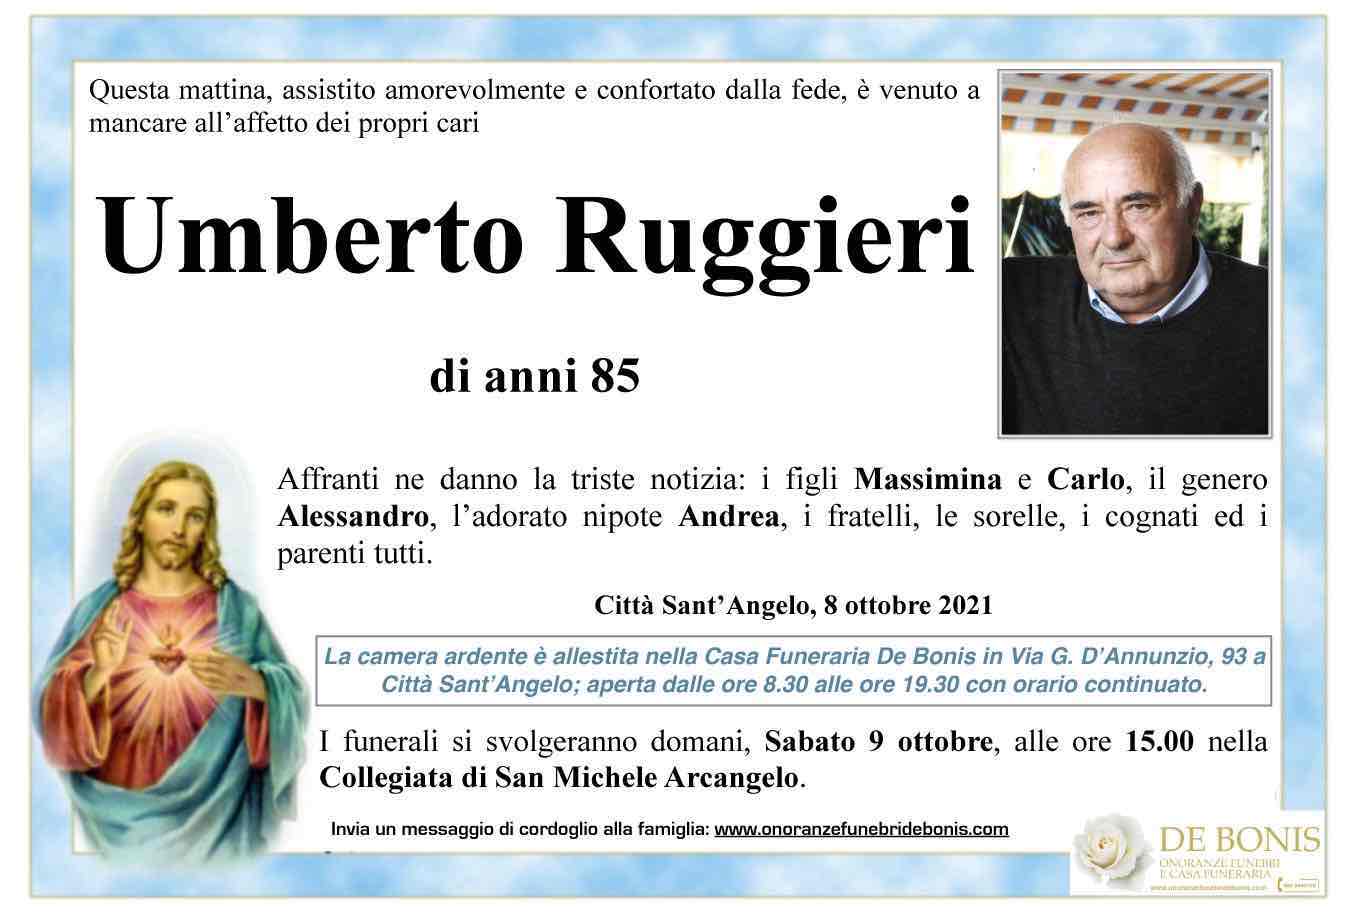 Umberto Ruggieri